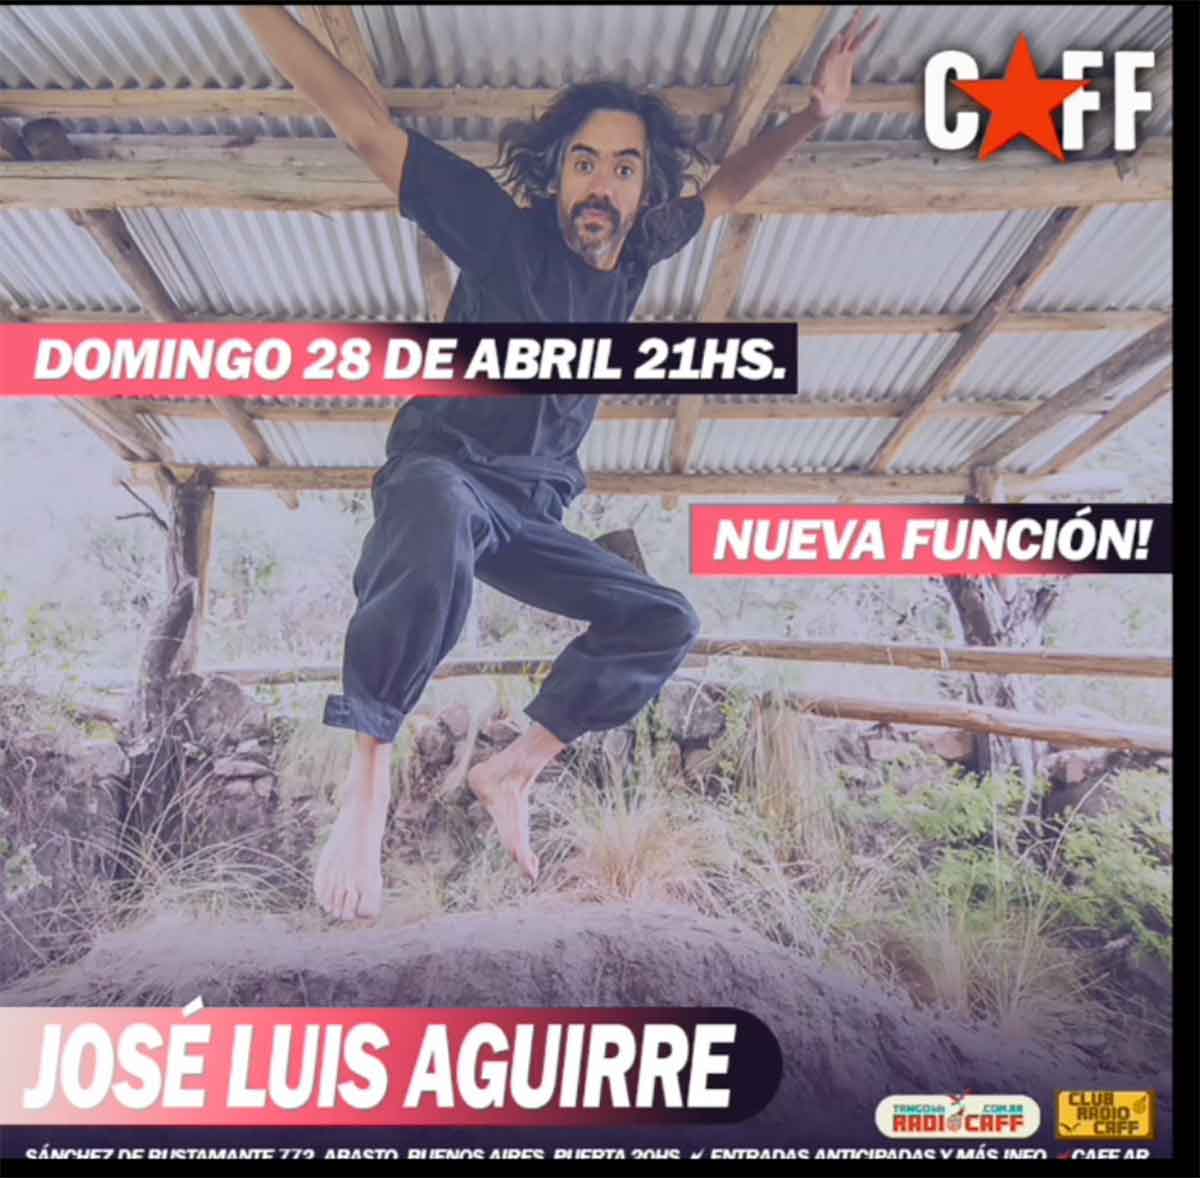 José Luis Aguirre en el CAFF